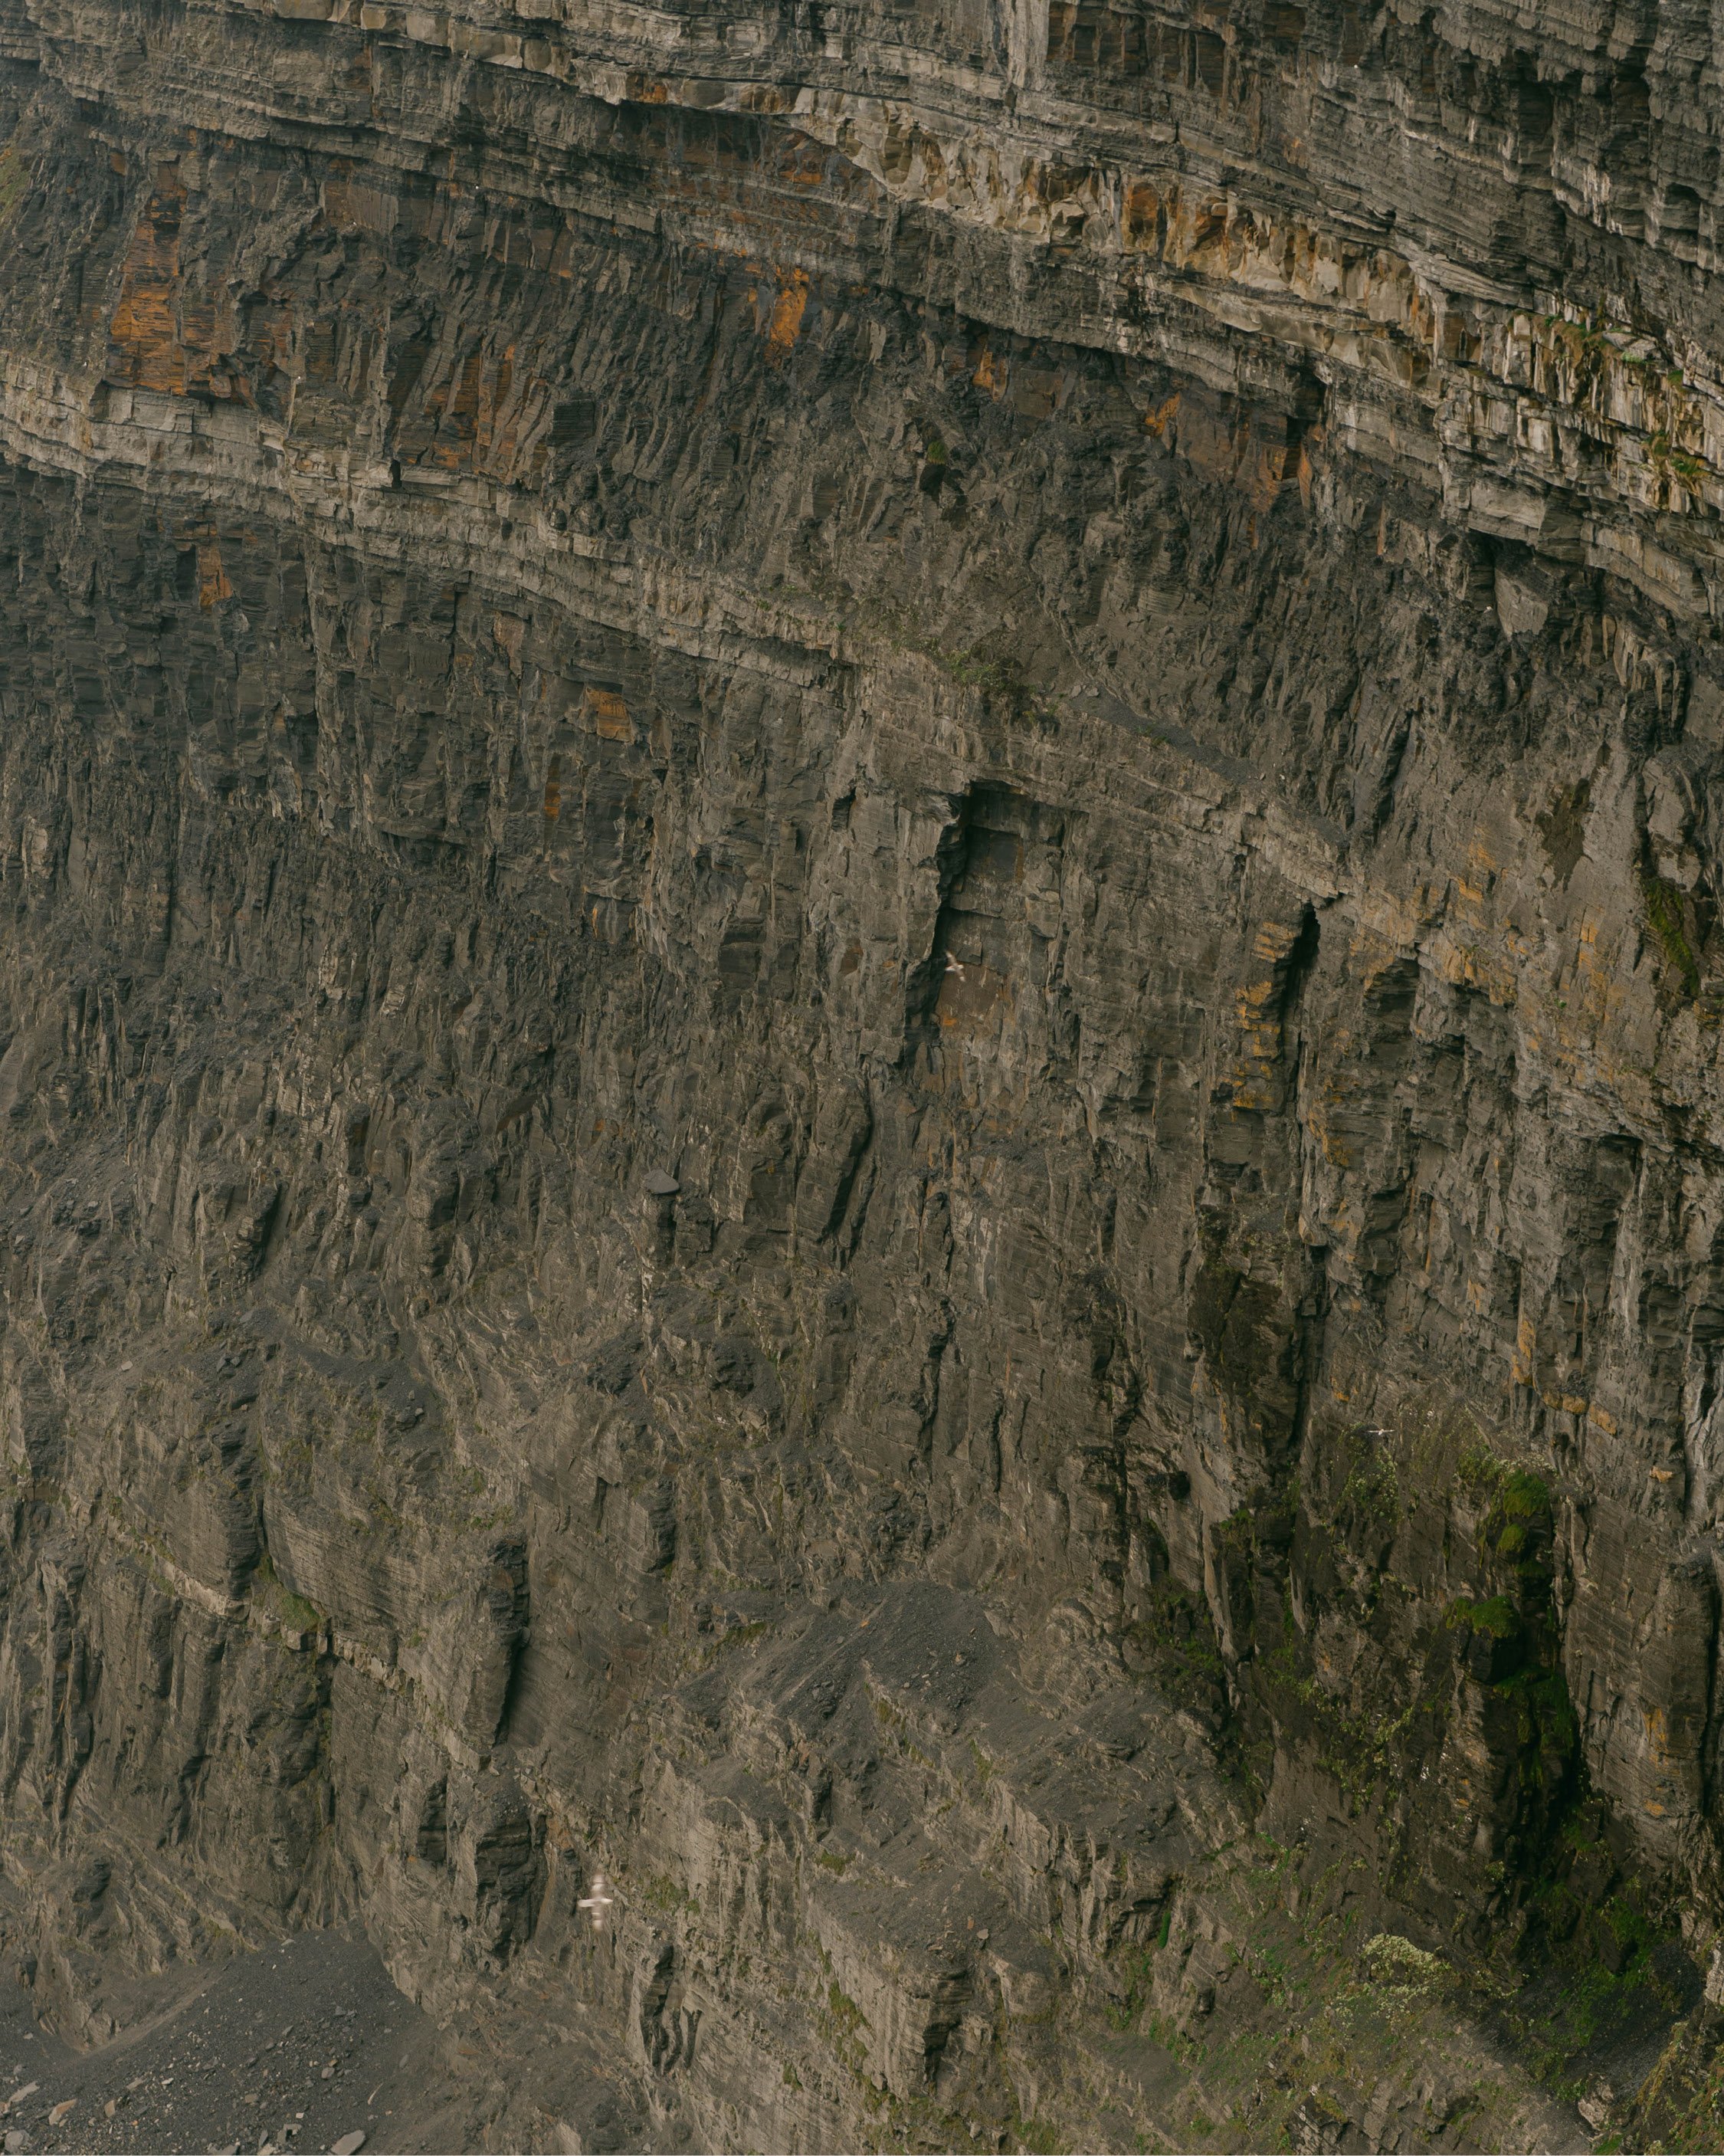 Cliffs of Moher rock face